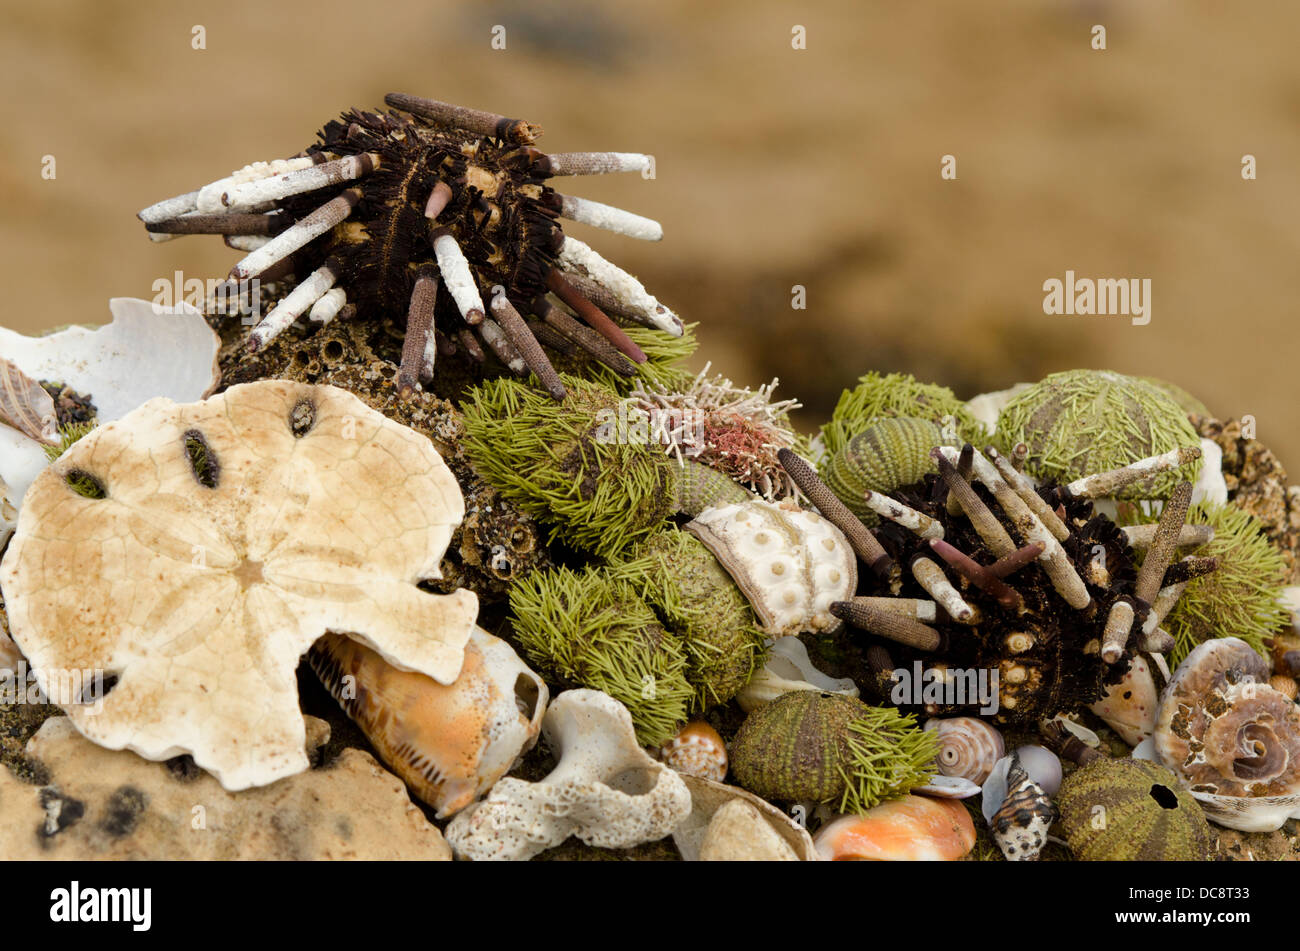 Ecuador, Galapagos, Floreana, Punta Cormoran. Group of sea shells, urchins and sand dollar. Stock Photo